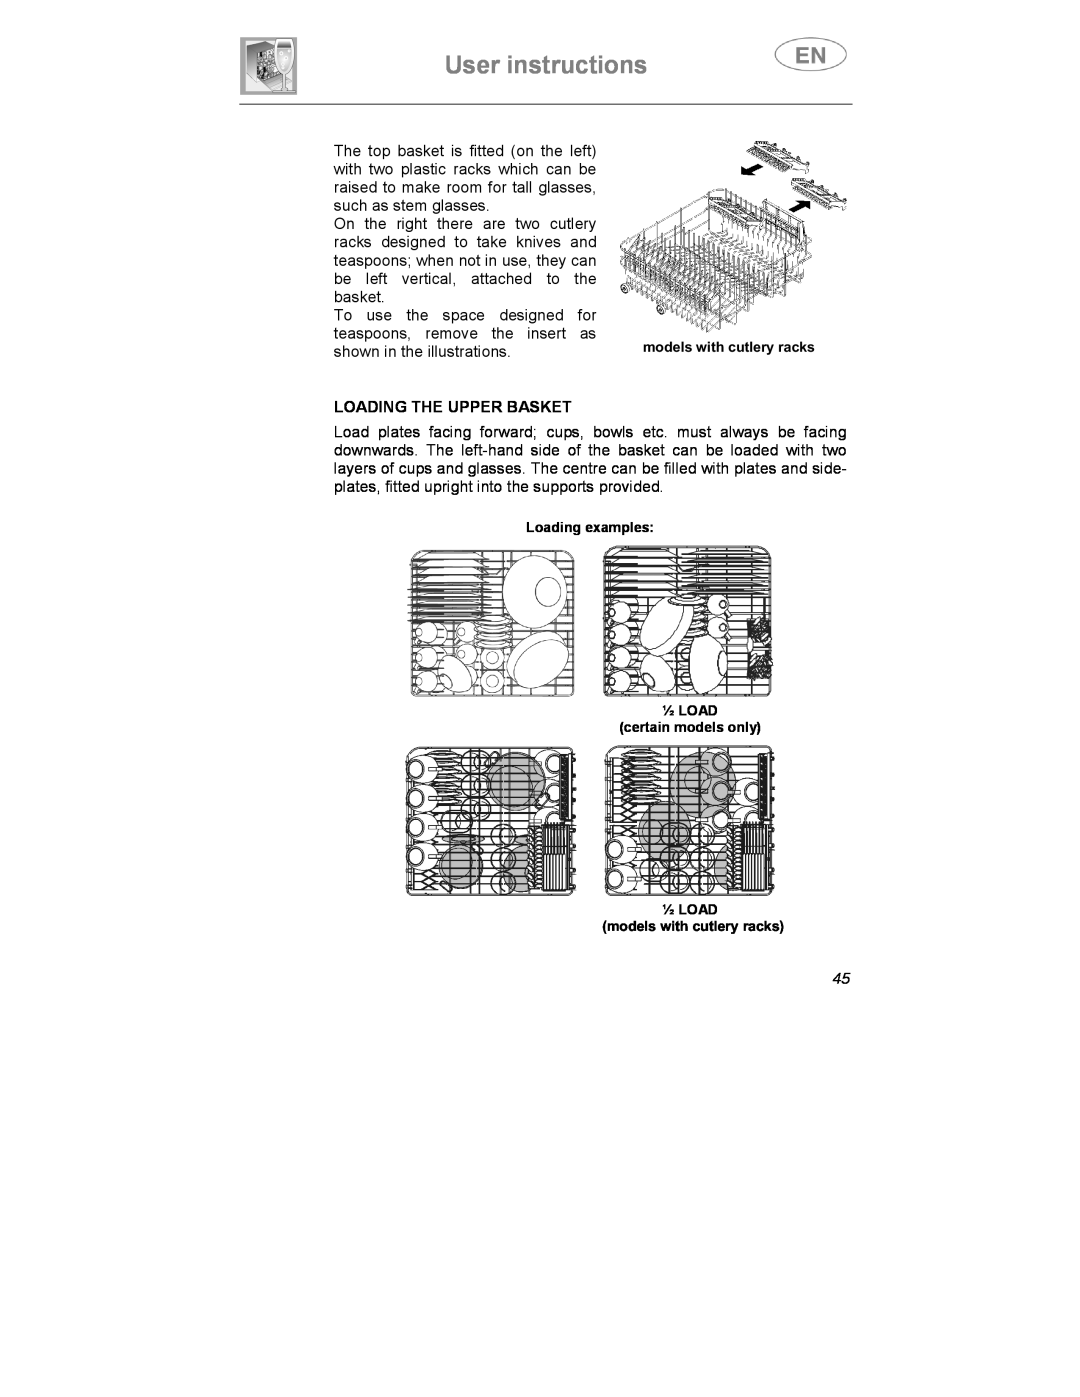 Smeg KS60-3T, KS60-2 instruction manual User instructions, Loading The Upper Basket 